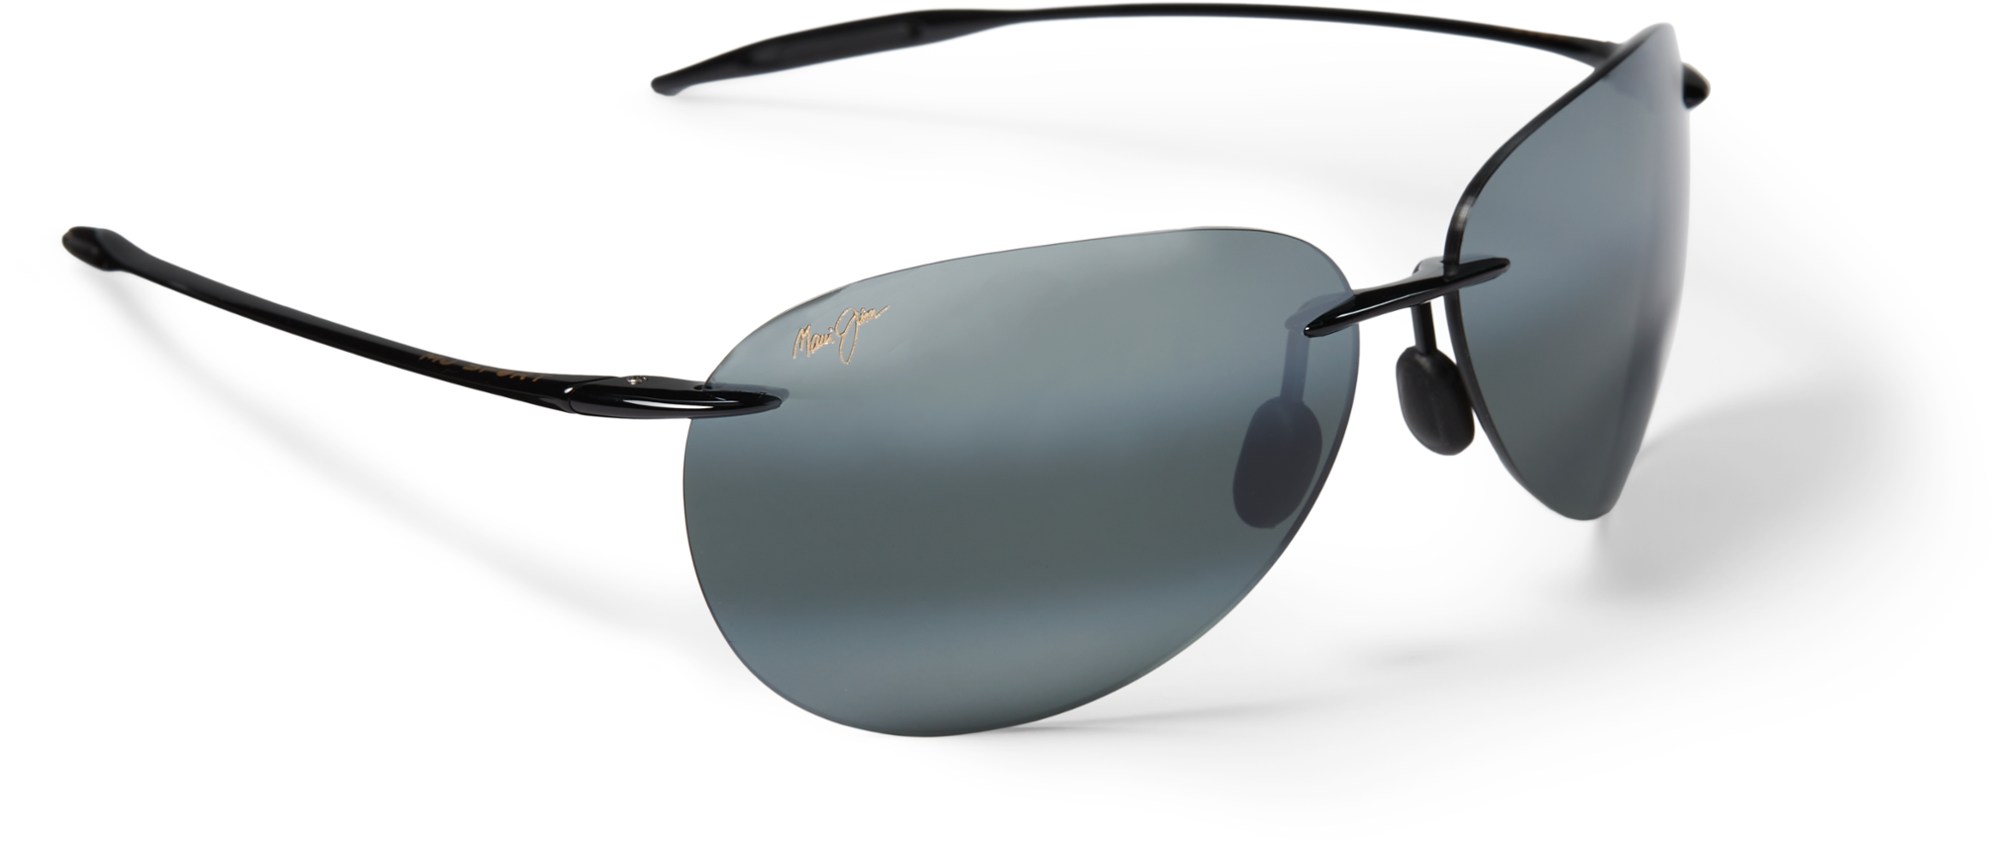 цена Поляризованные солнцезащитные очки Sugar Beach Maui Jim, черный